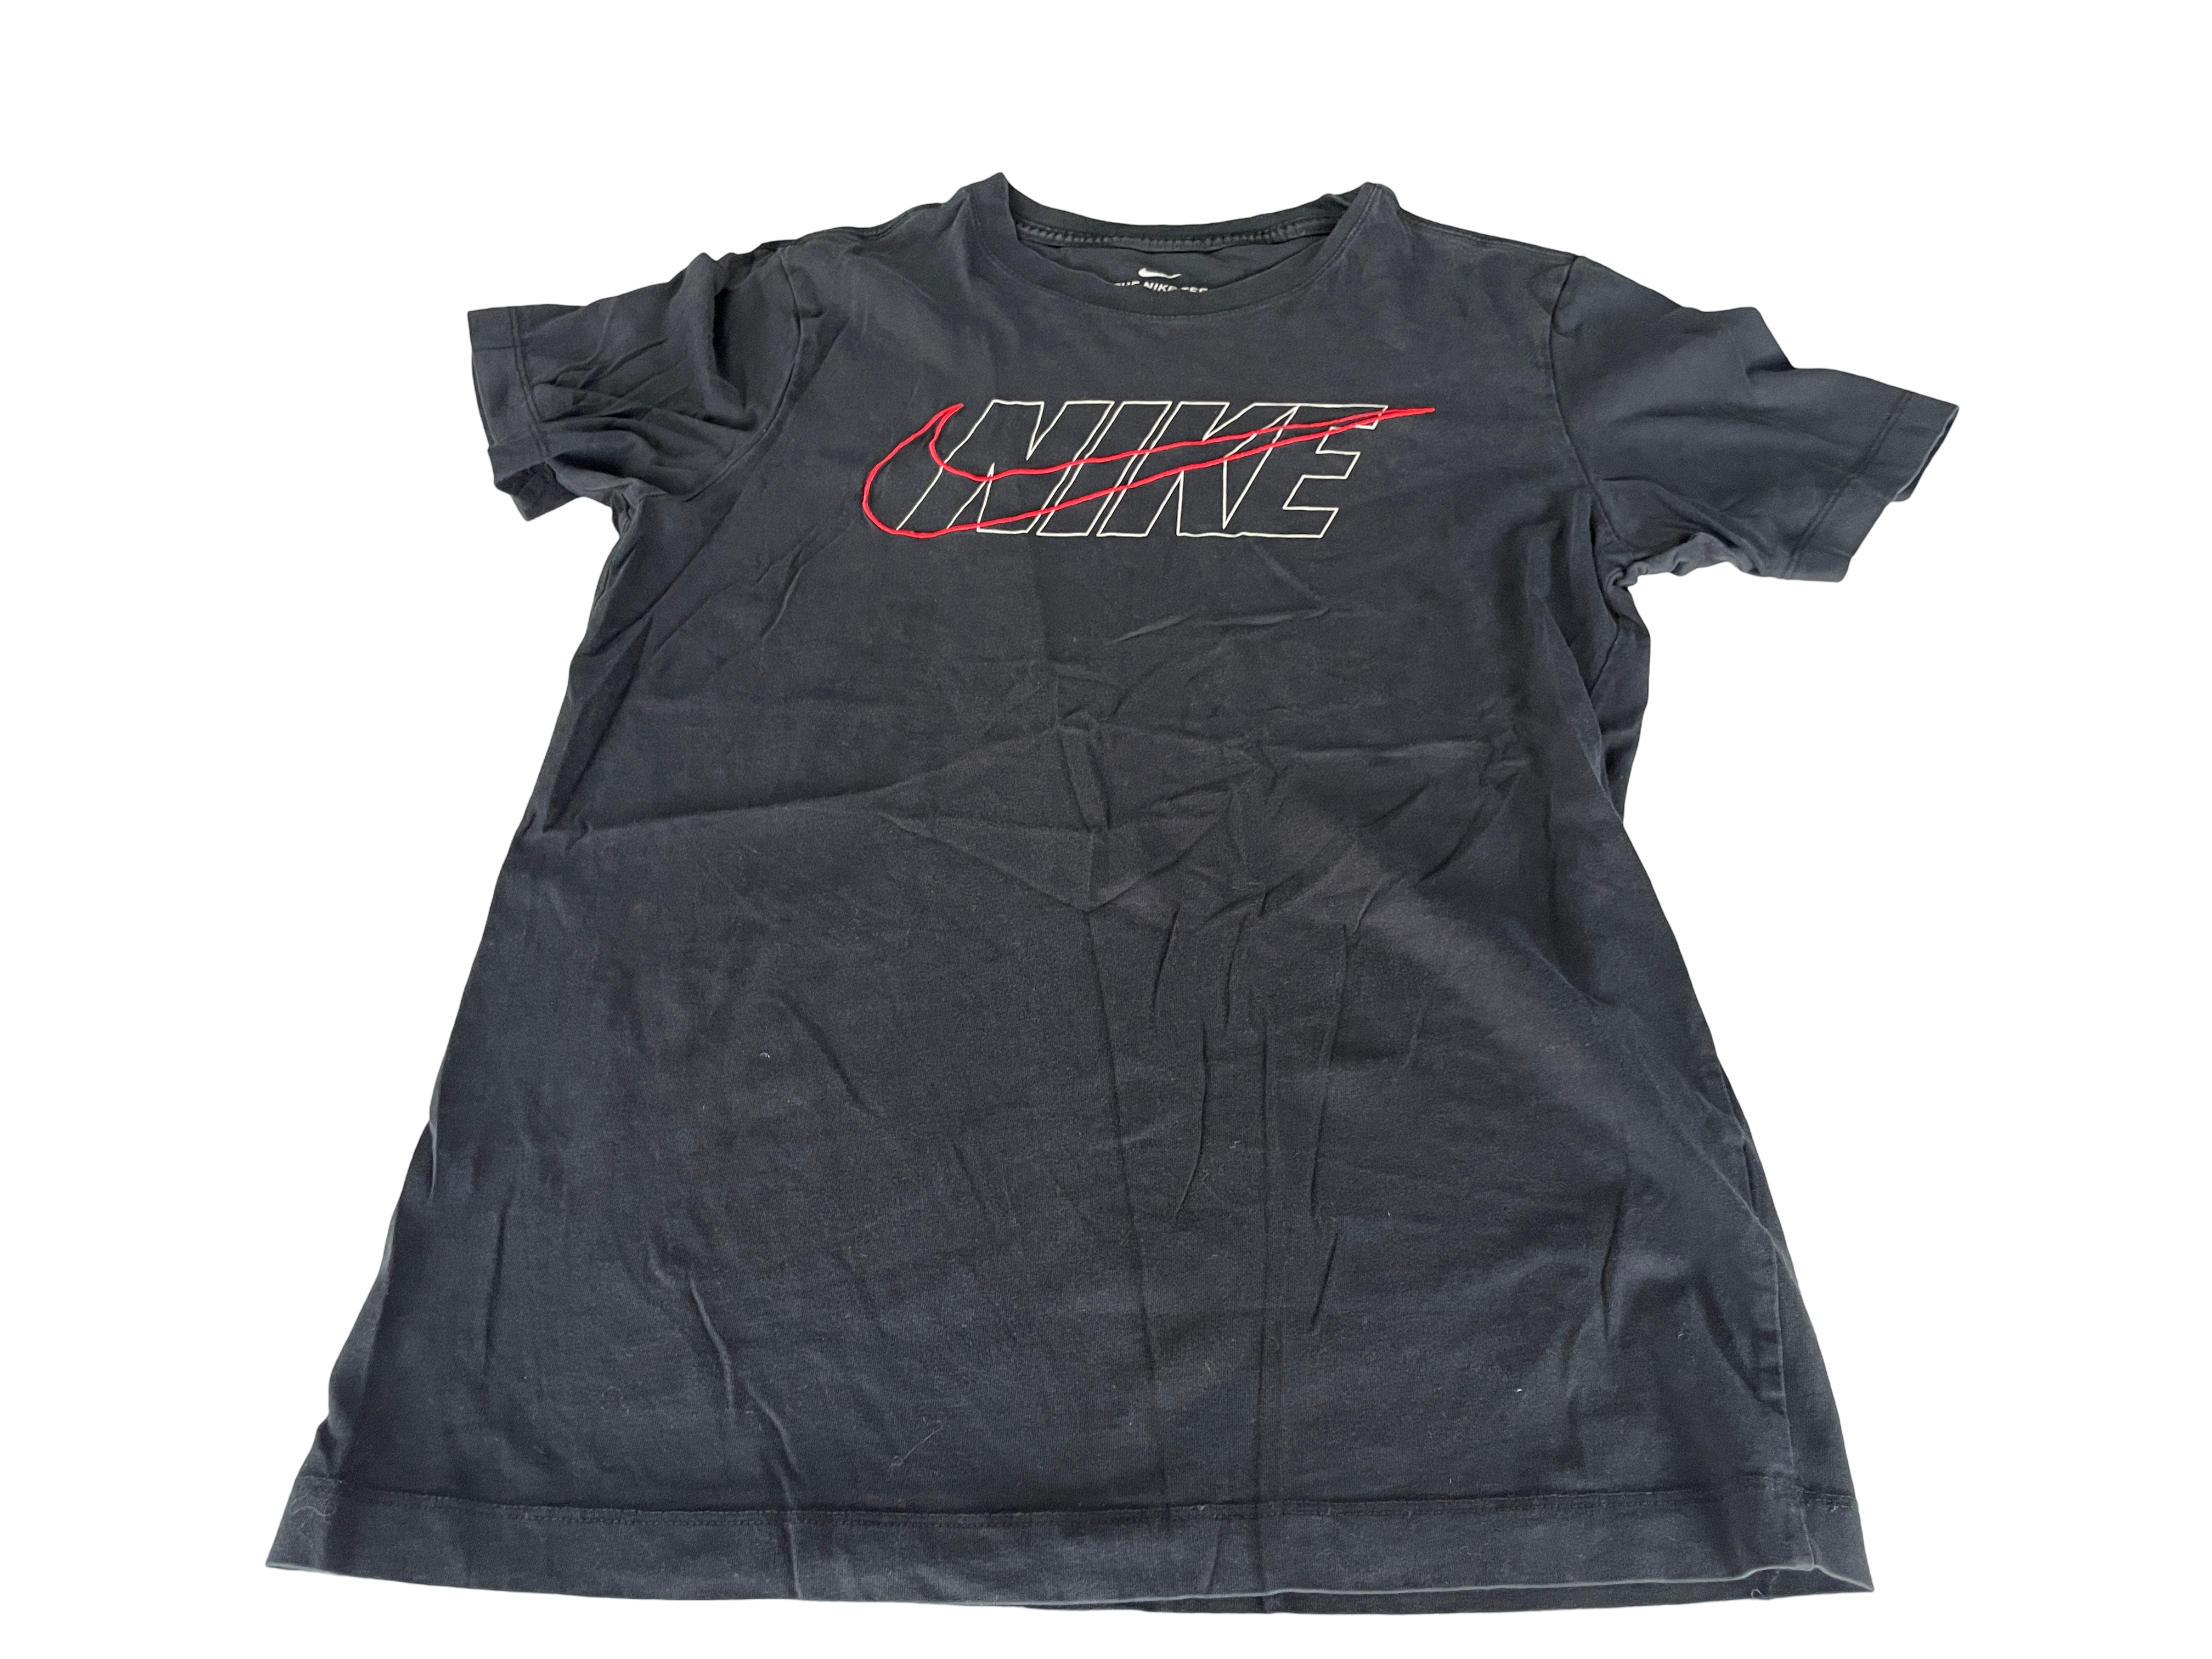 Vintage Nike black Swoosh Tee - Black in size S |SKU 5019